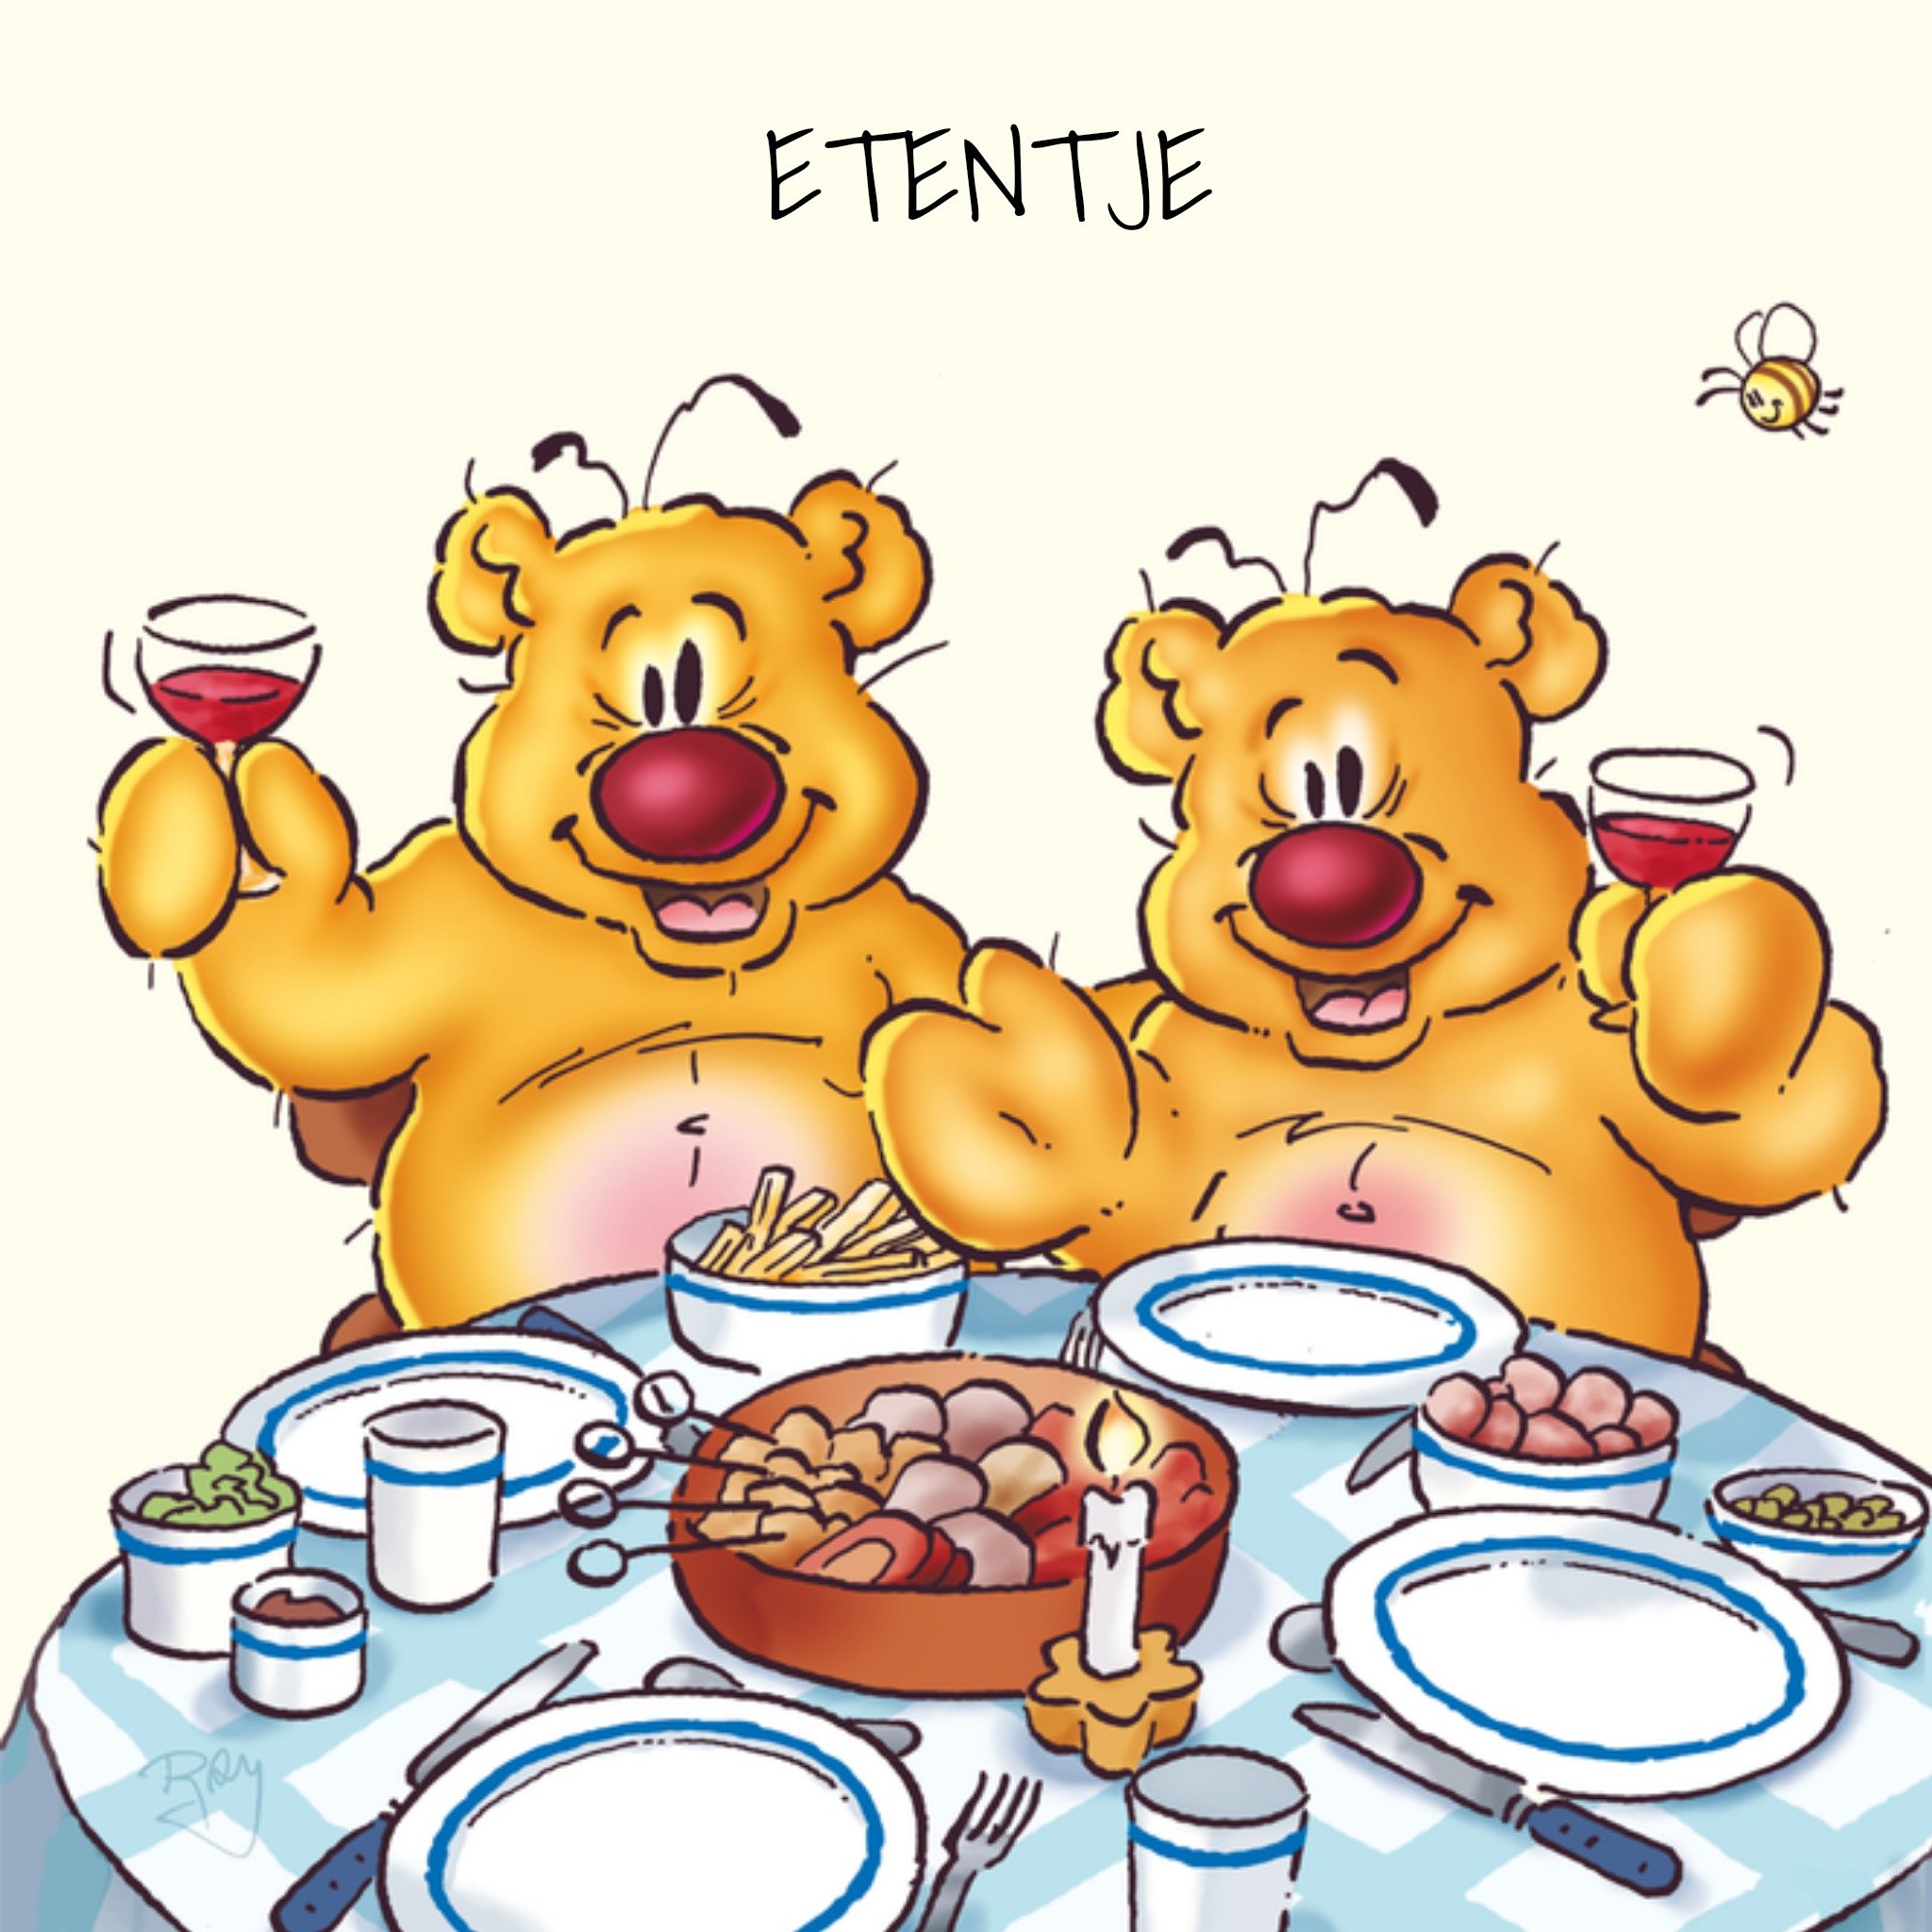 Doodles - Uitnodiging etentje - beren